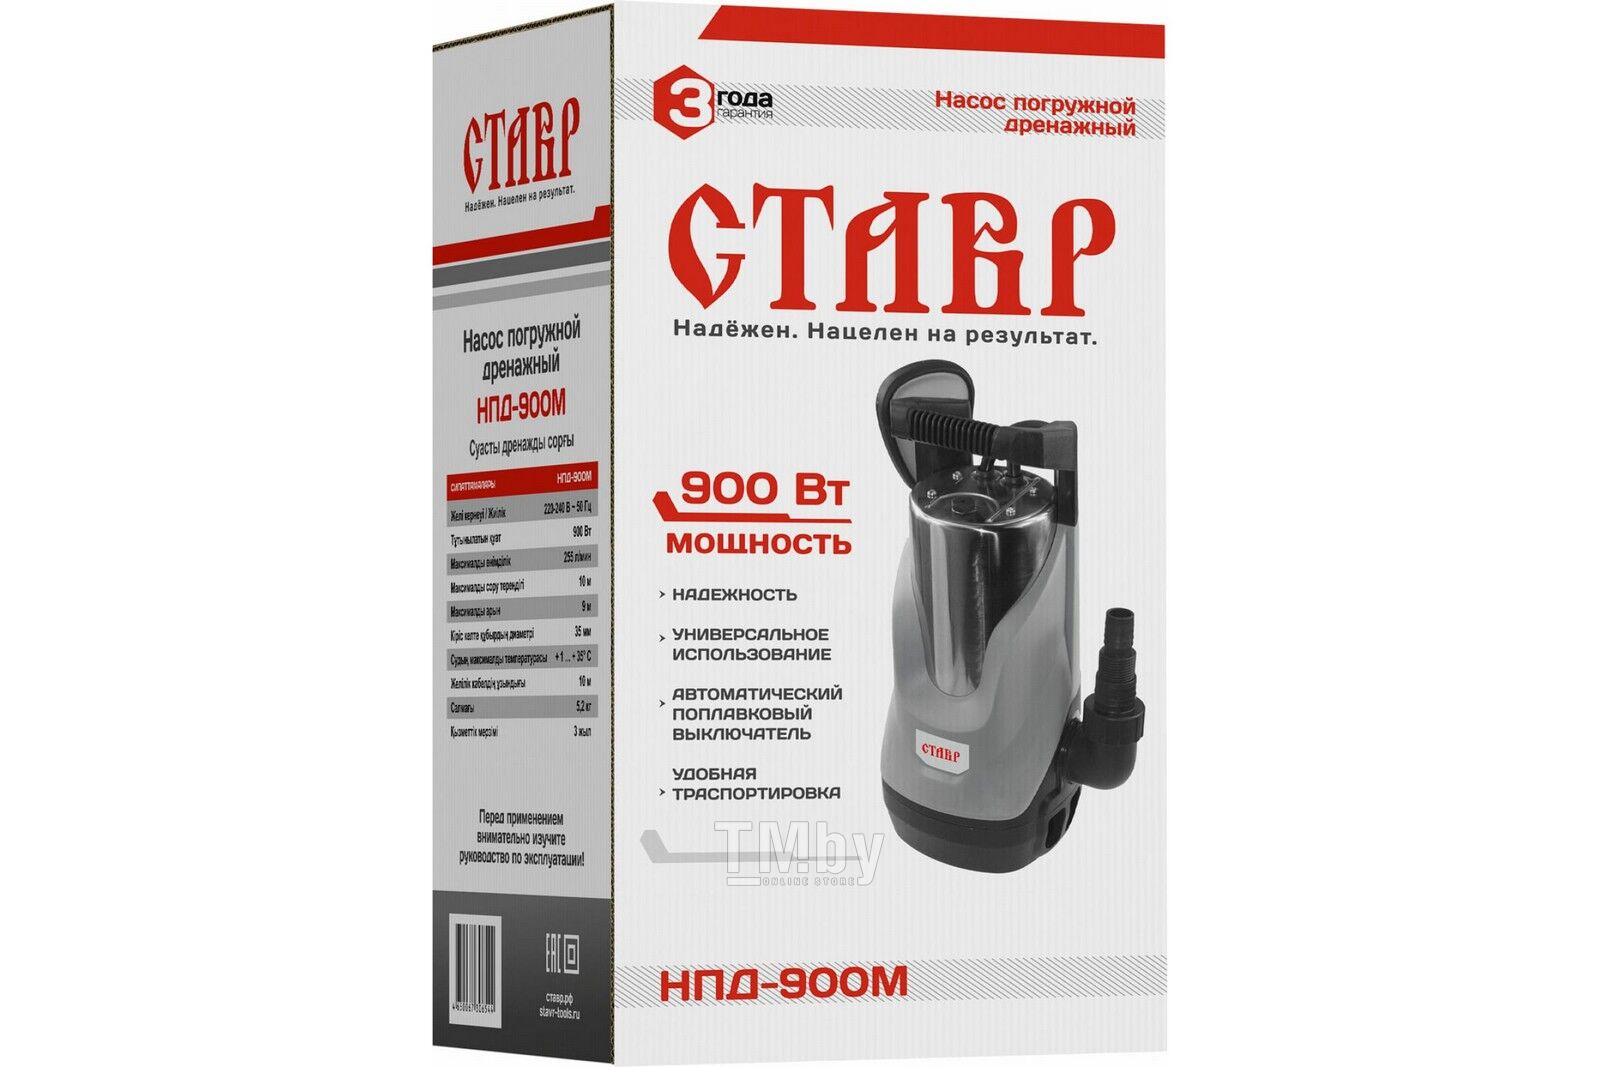 Купить дренажный насос  НПД-900М в Минске — TM.by